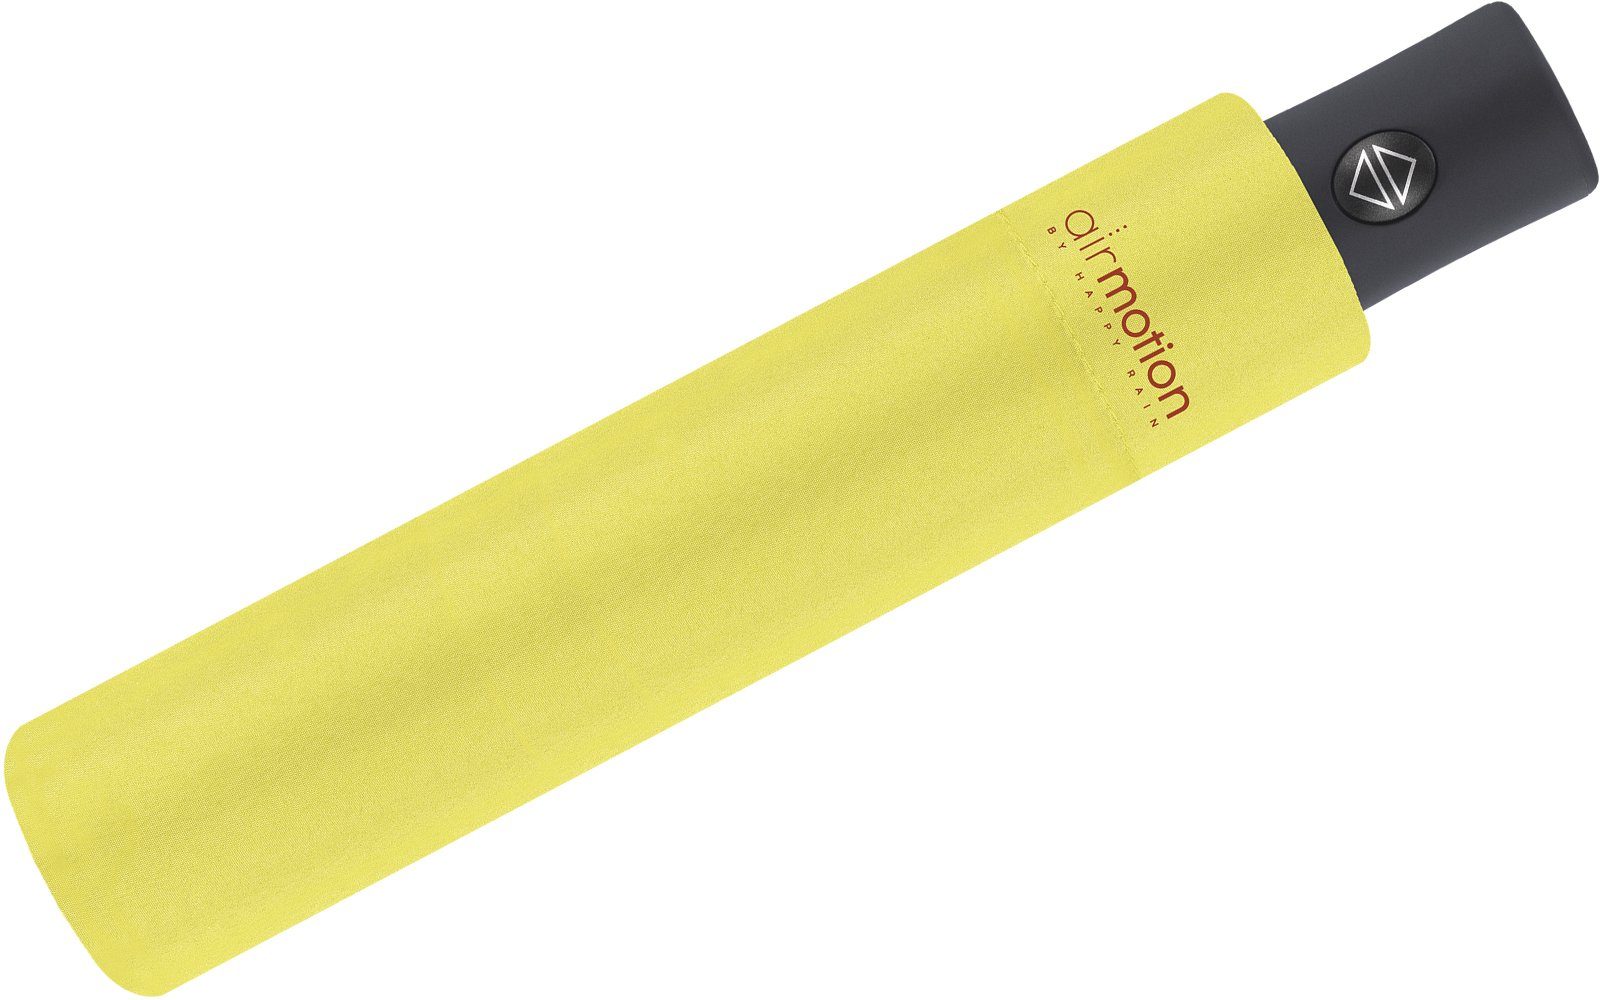 superleicht, Gepäck HAPPY für perfekt gelb Taschenregenschirm Minischirm g - Air und leichtester RAIN vollautomatischer - 174 Auf-Zu-Automatik Motion Handtasche